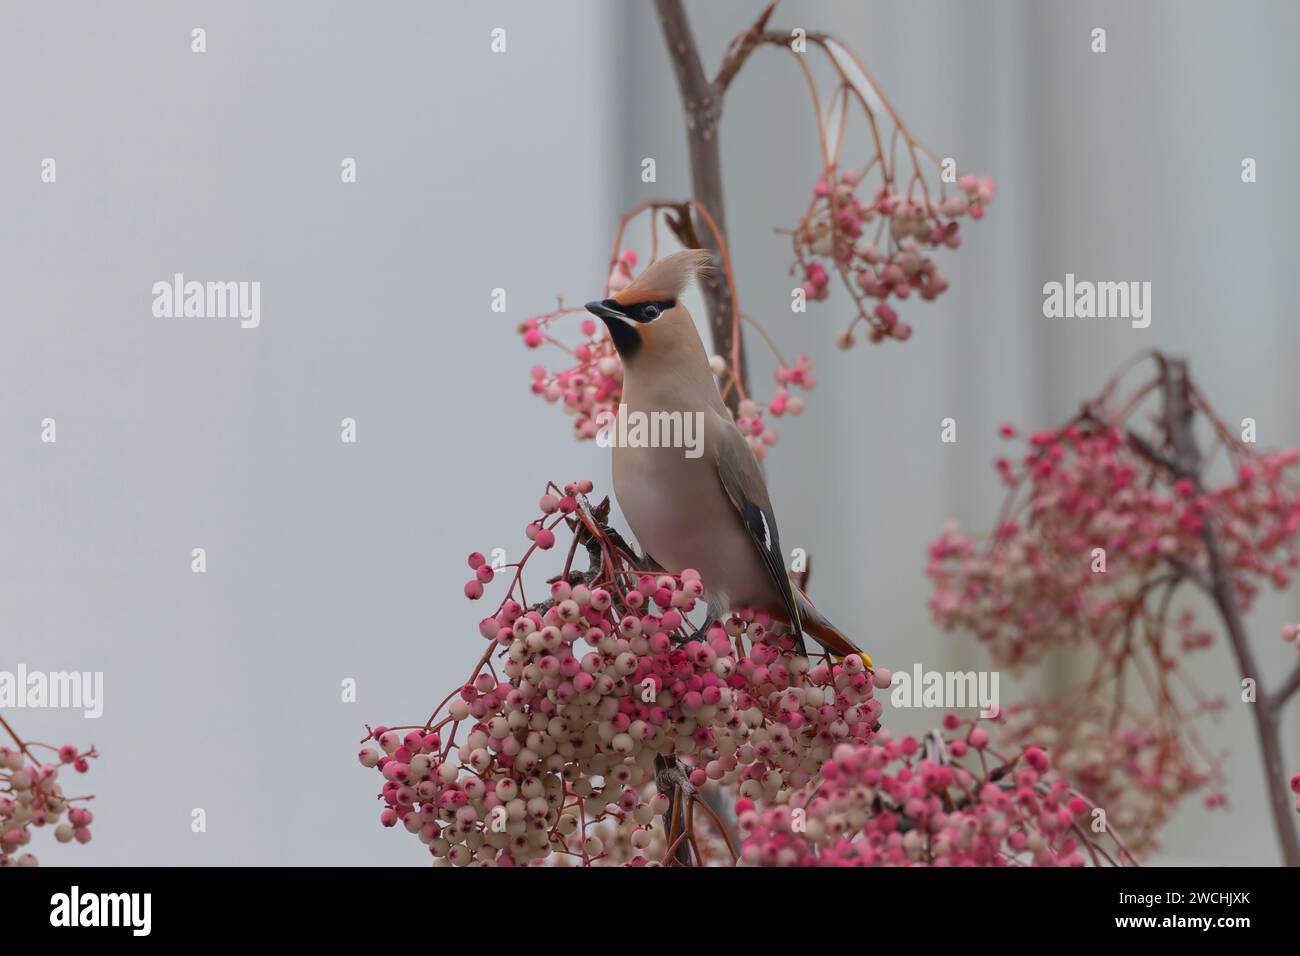 Ein Wachsflügel sieht majestätisch aus in den atemberaubenden Beerenfarben BALHAM, LONDON ATEMBERAUBENDE BILDER eines Showoff-Wachsflügels, der Winterbeeren auf seinem Schnabel ausbalanciert Stockfoto